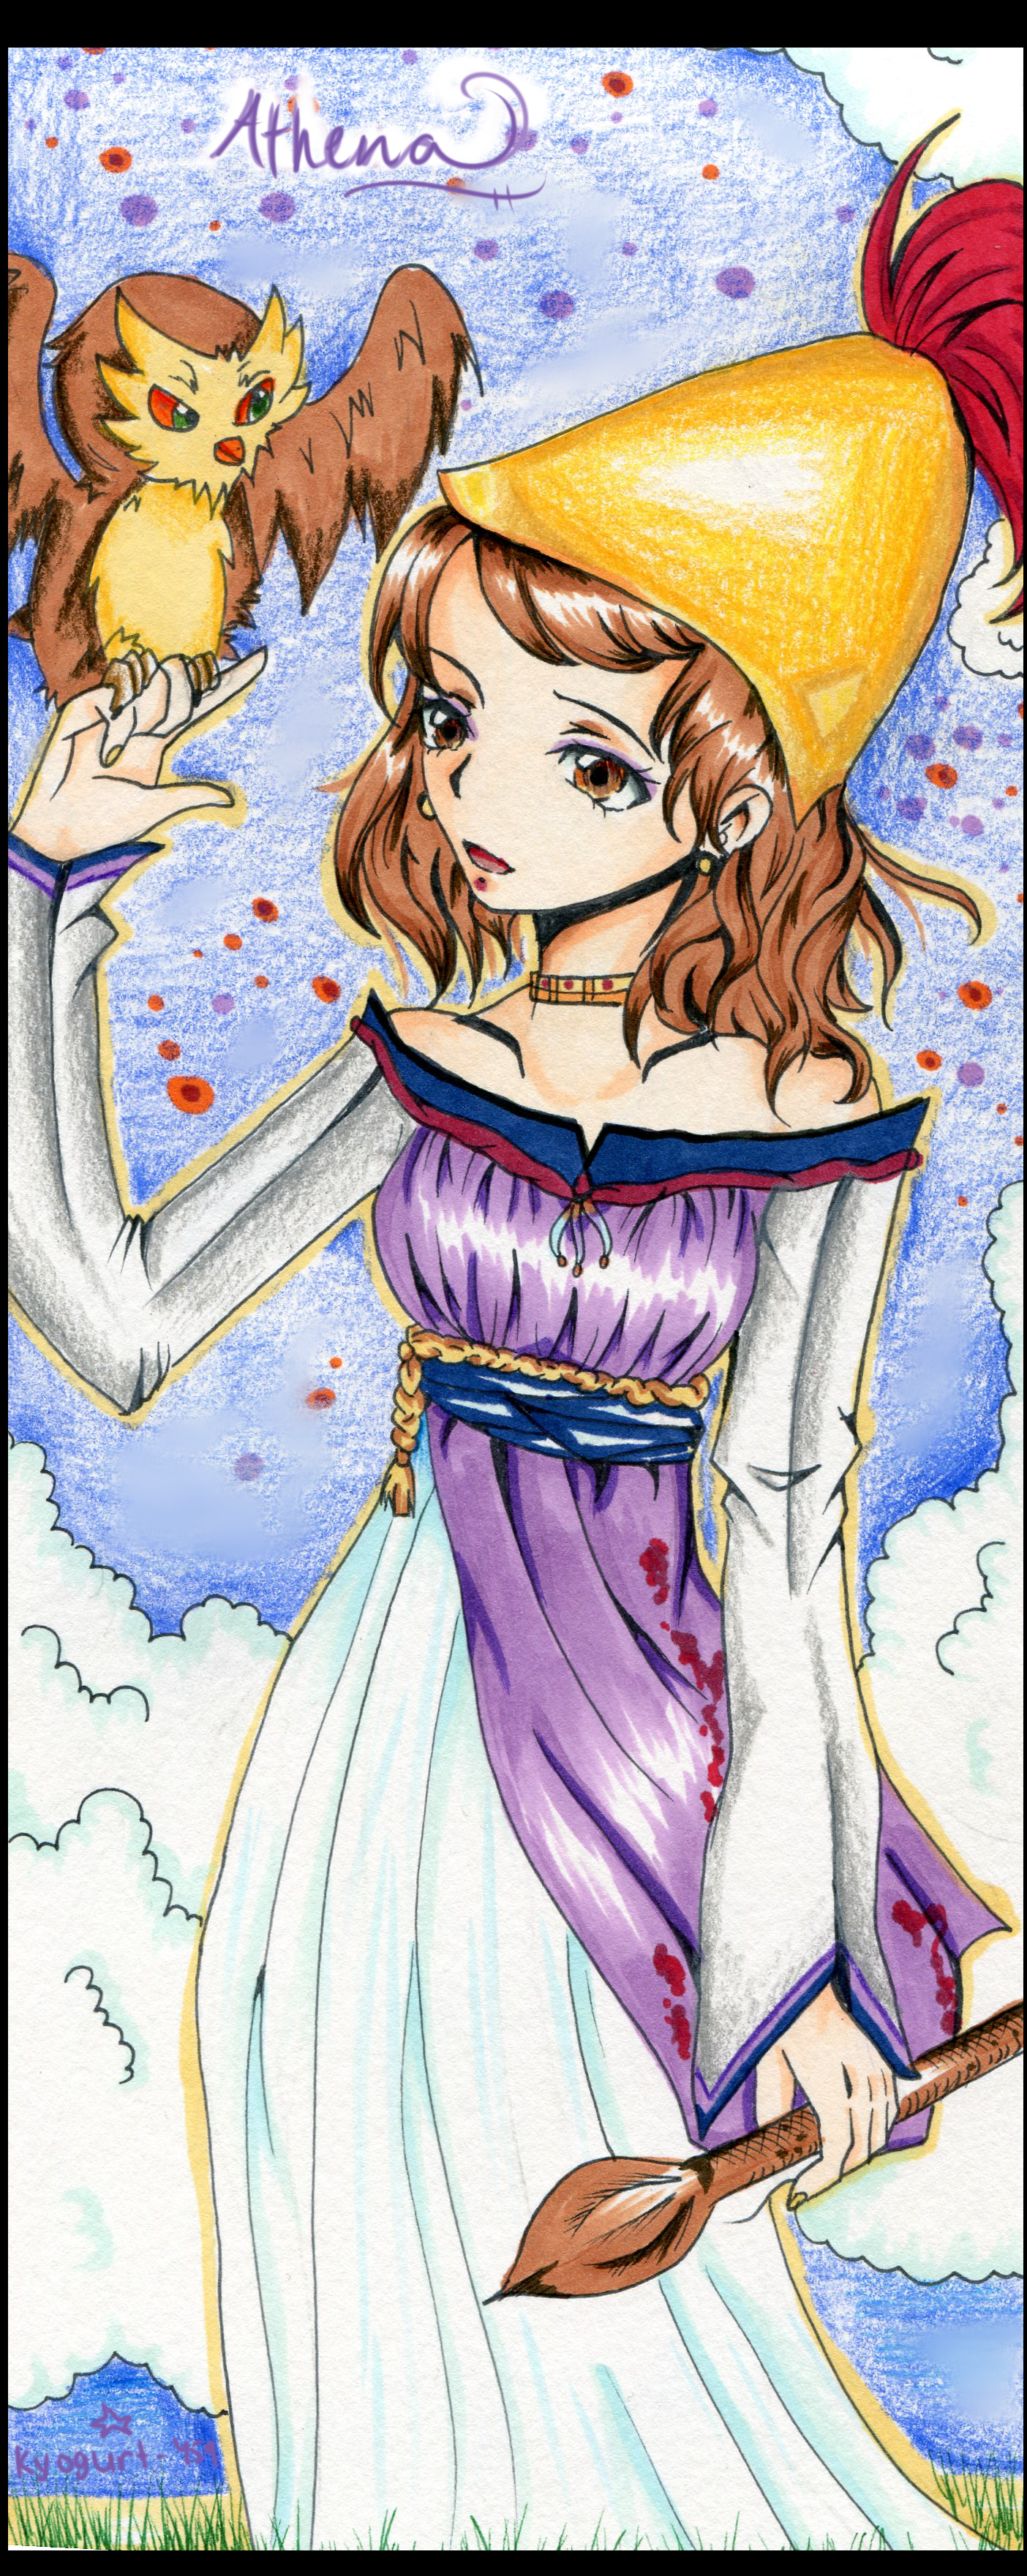 Athena Goddess of Wisdom by Kyogurt-Star459 on DeviantArt